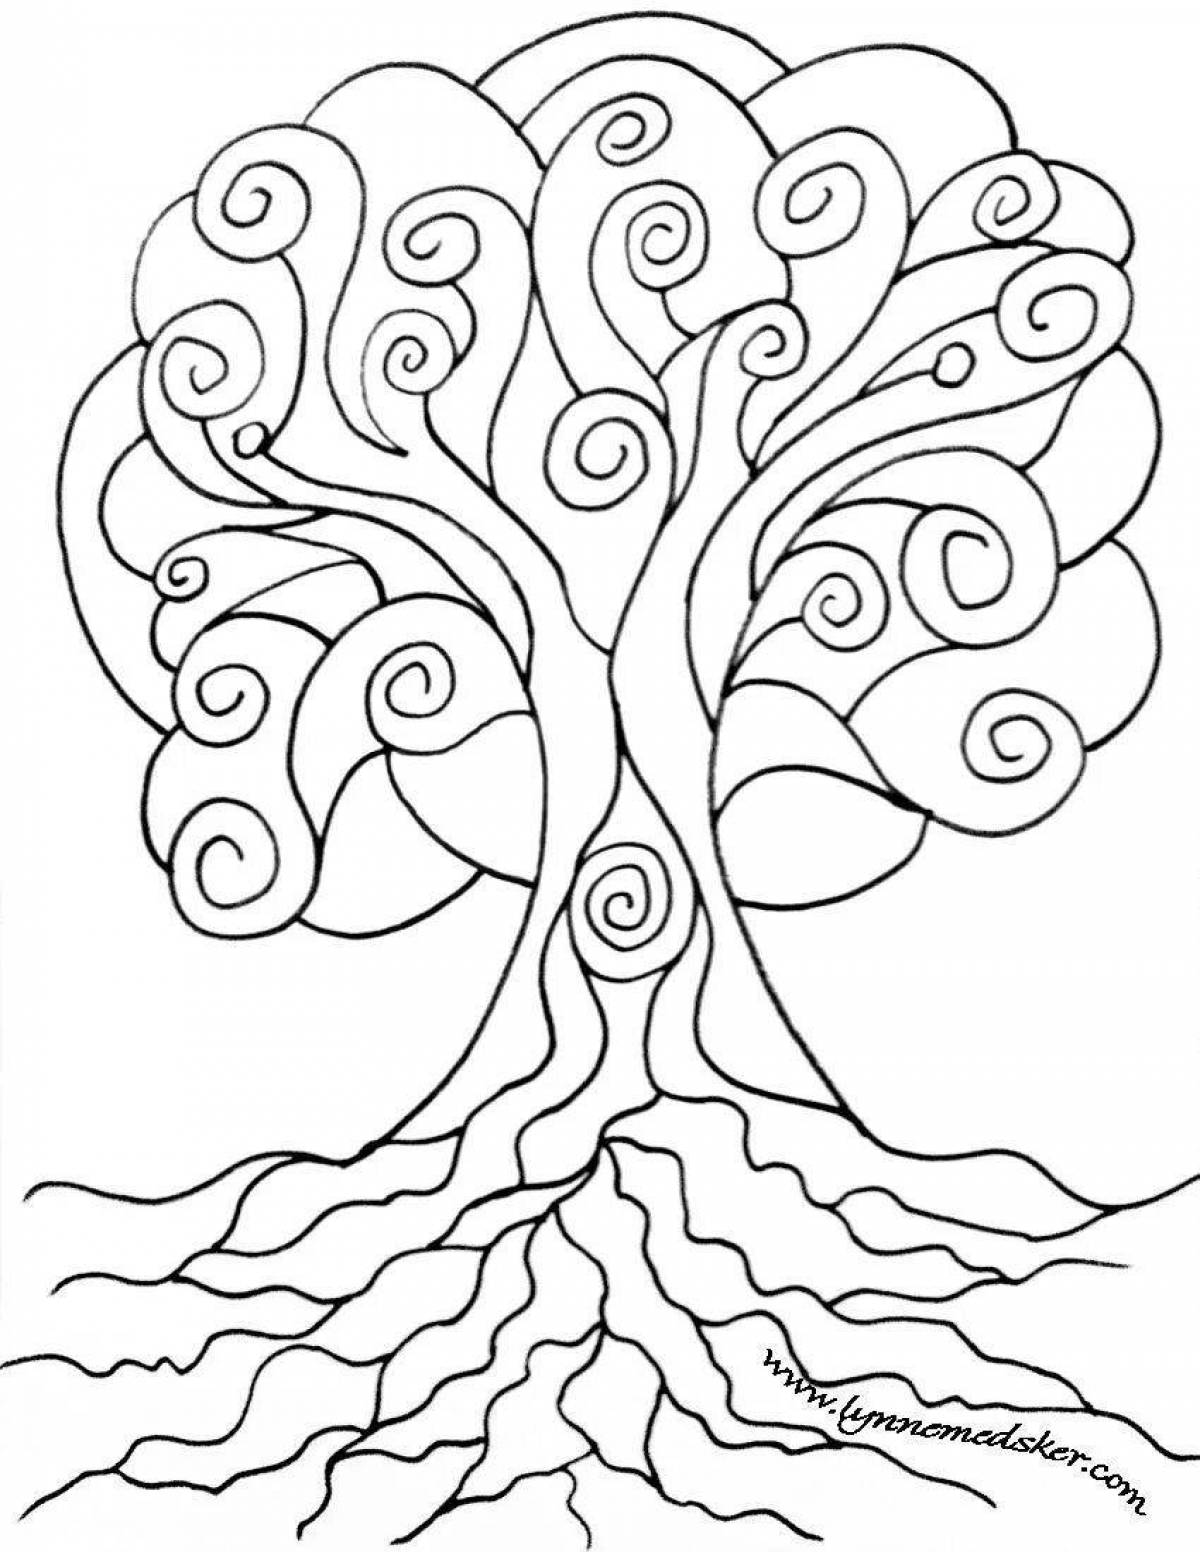 Очаровательная раскраска дерево жизни